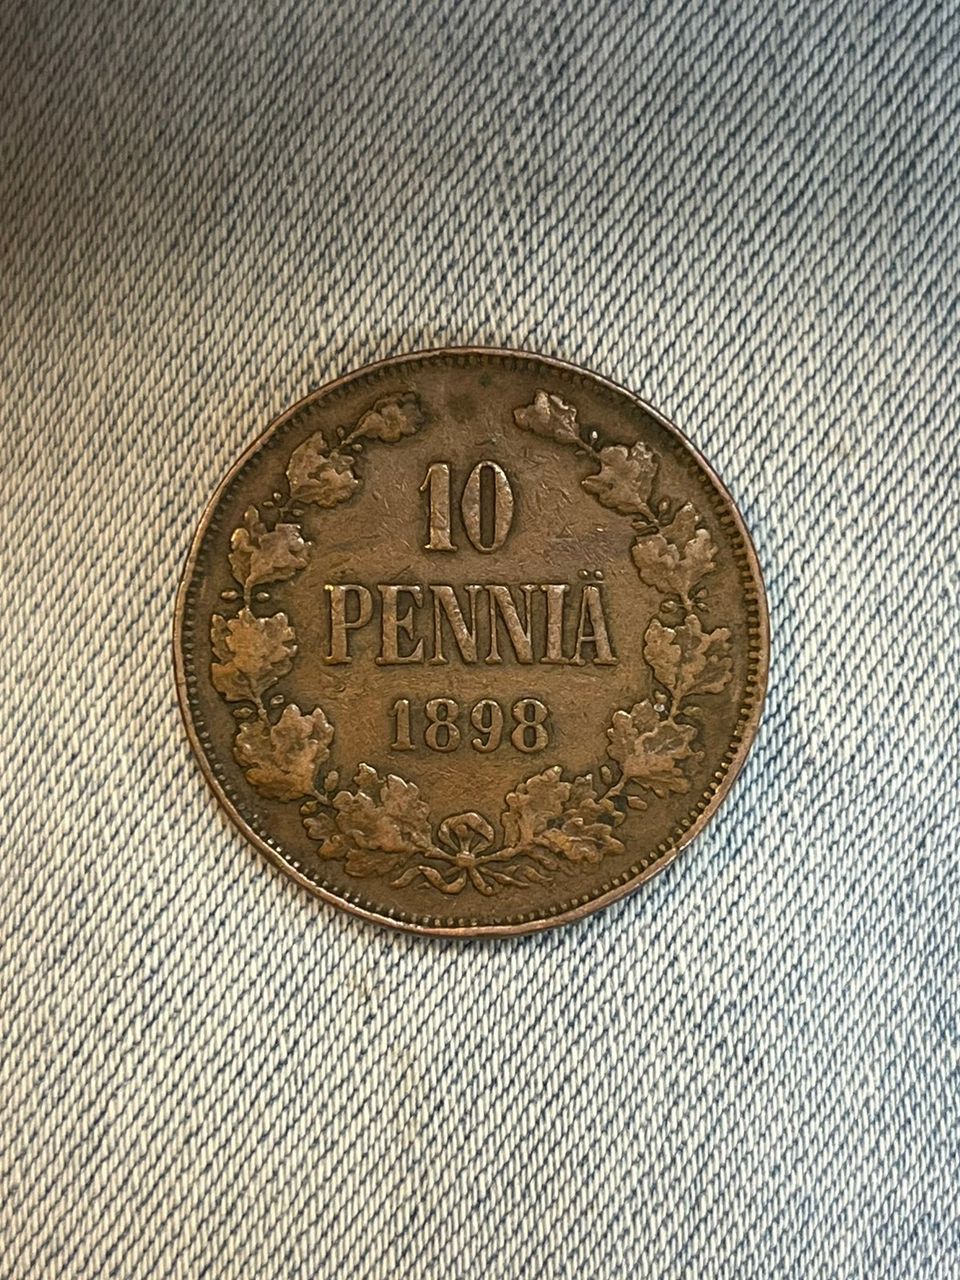 10 penniä 1898